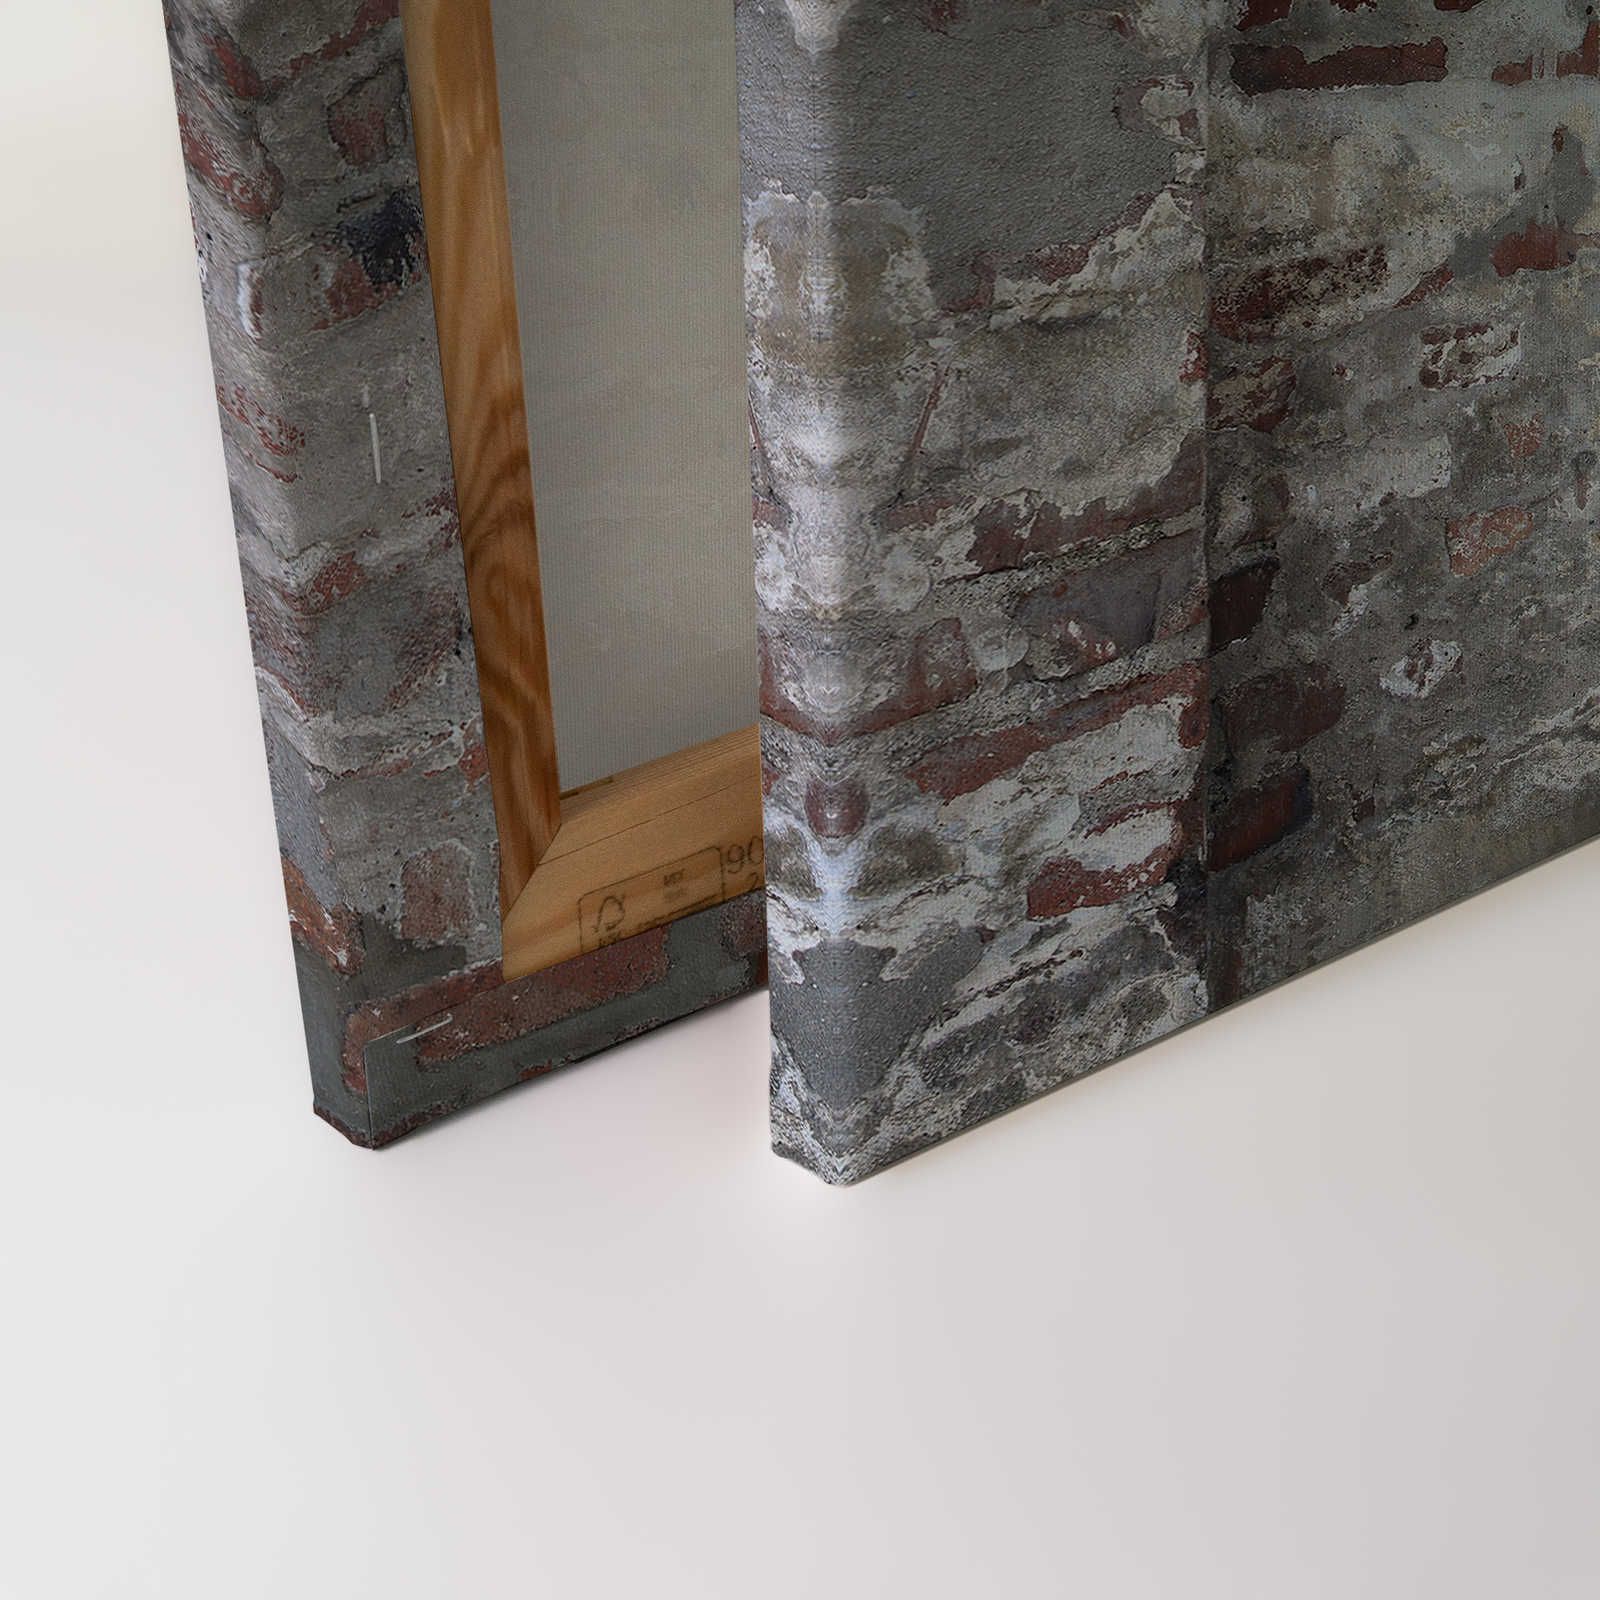             Tableau toile Maçonnerie brique & crépi aspect usé - 0,90 m x 0,60 m
        